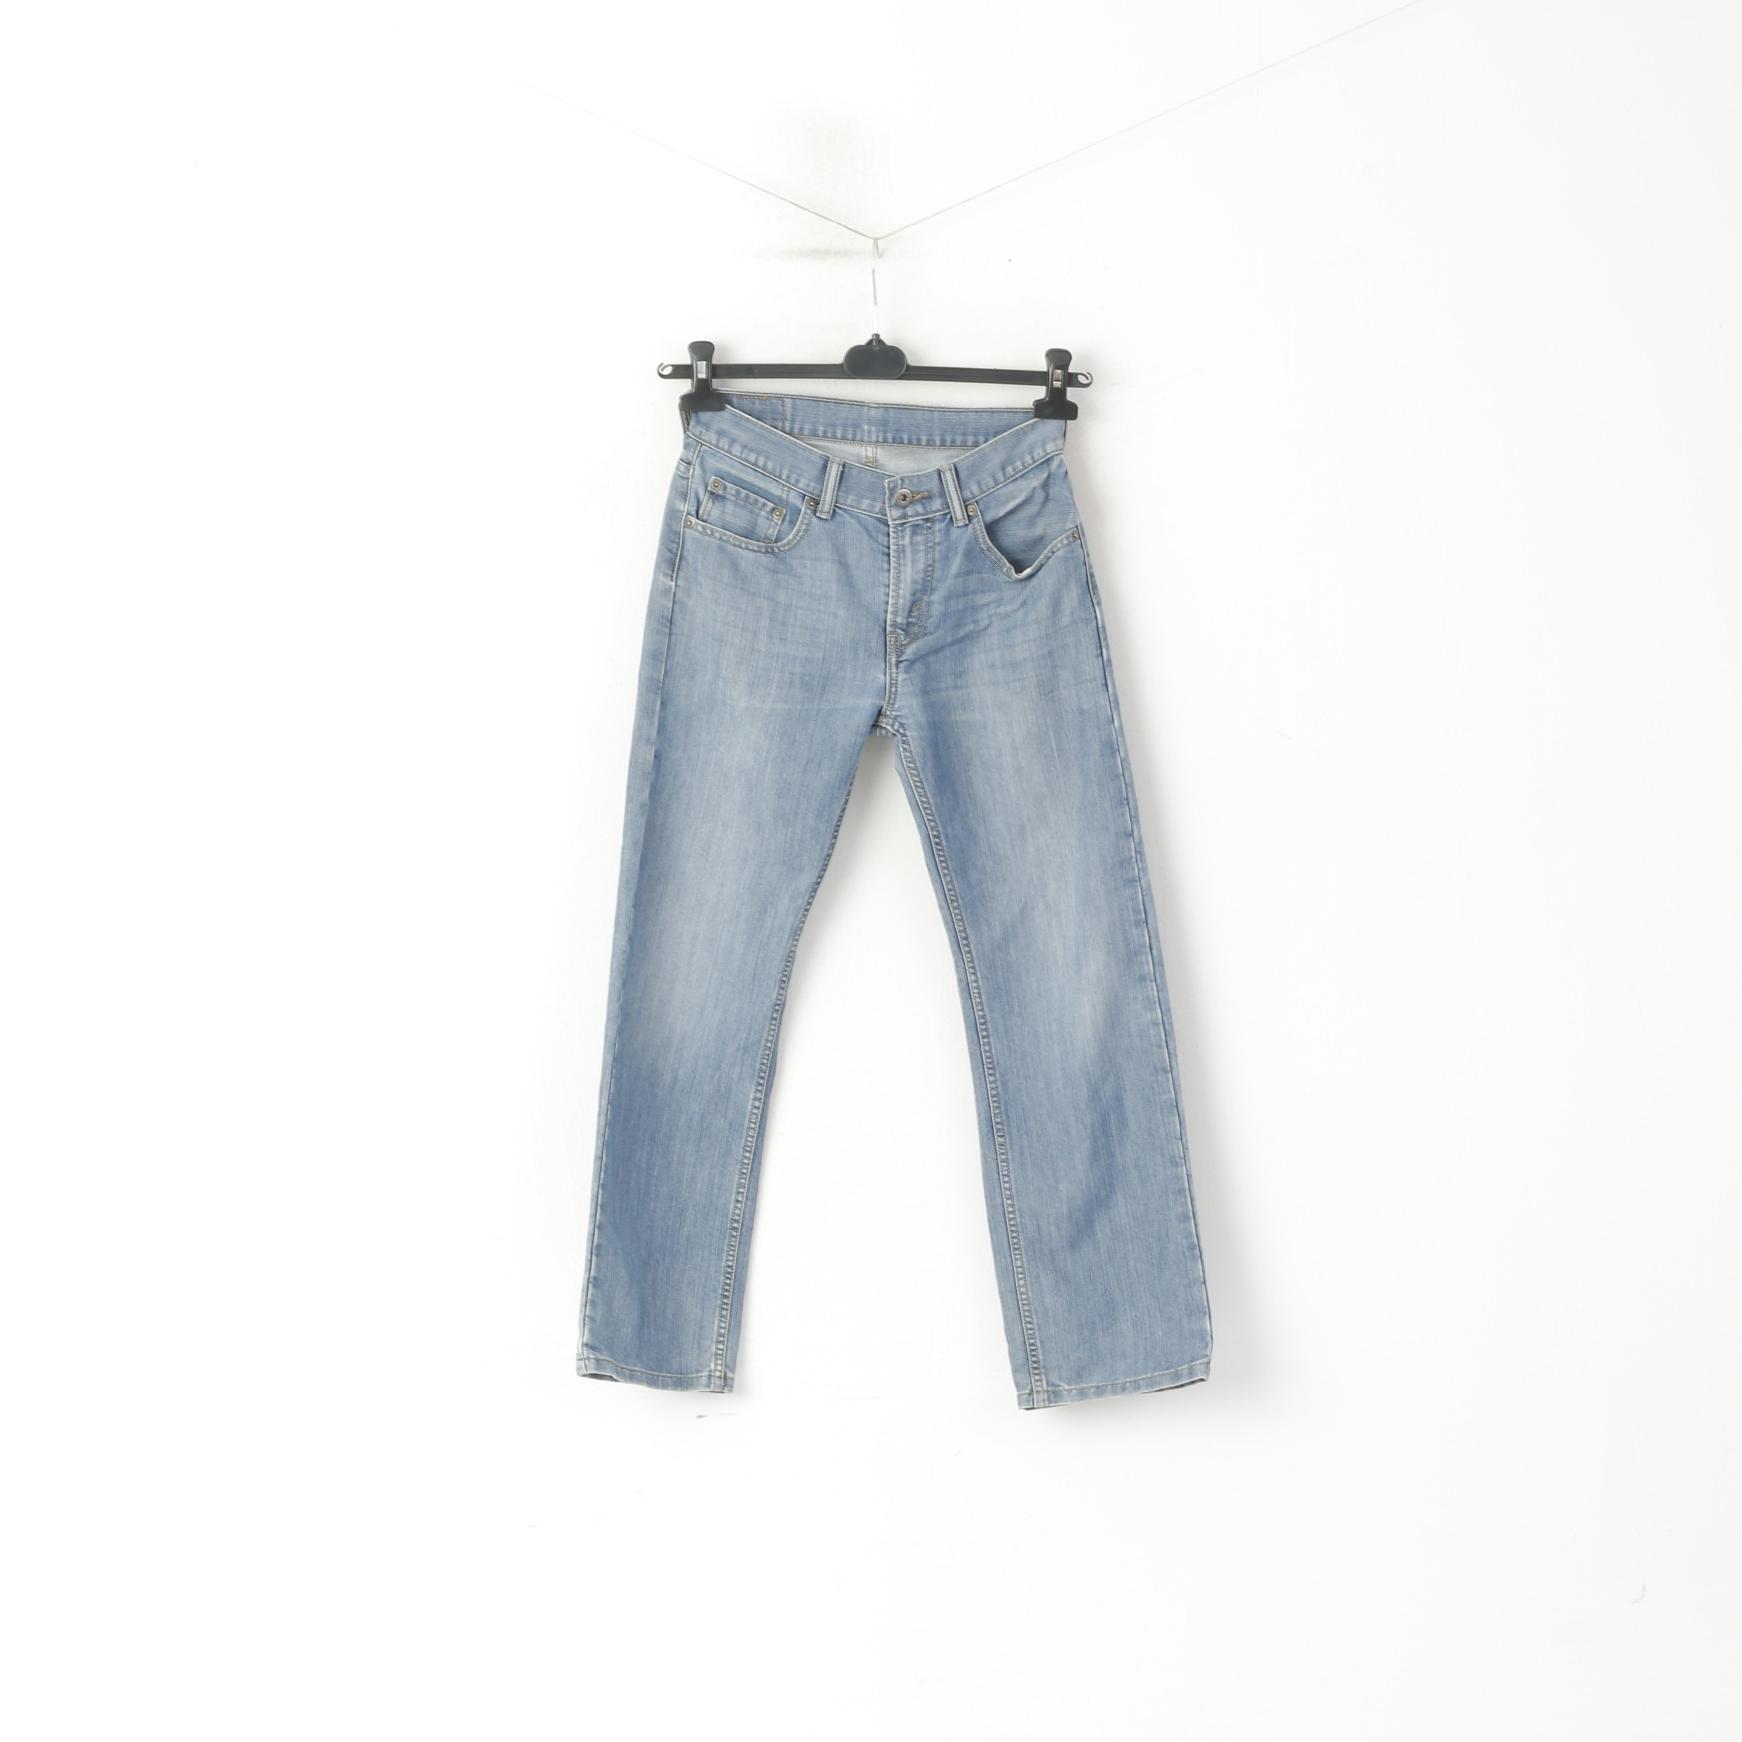 Levi's 505 Women 26 Jeans Trousers Blue Cotton Vintage Straight Pants –  RetrospectClothes